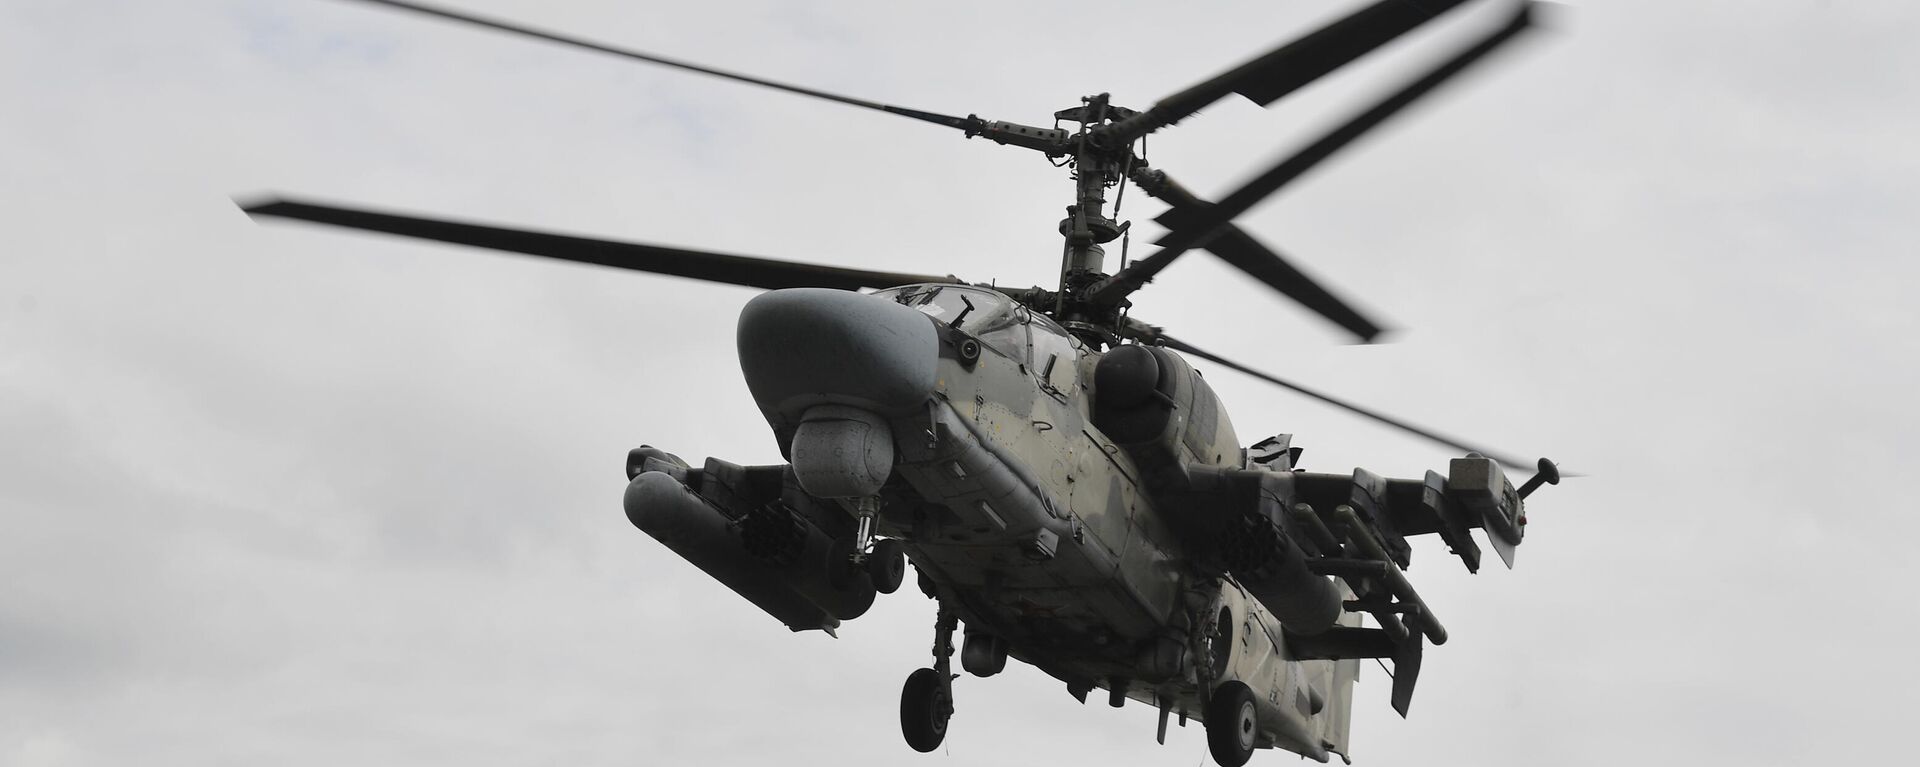 Ka-52 attack helicopter operating in Donbass. June 2023. - Sputnik International, 1920, 13.06.2023